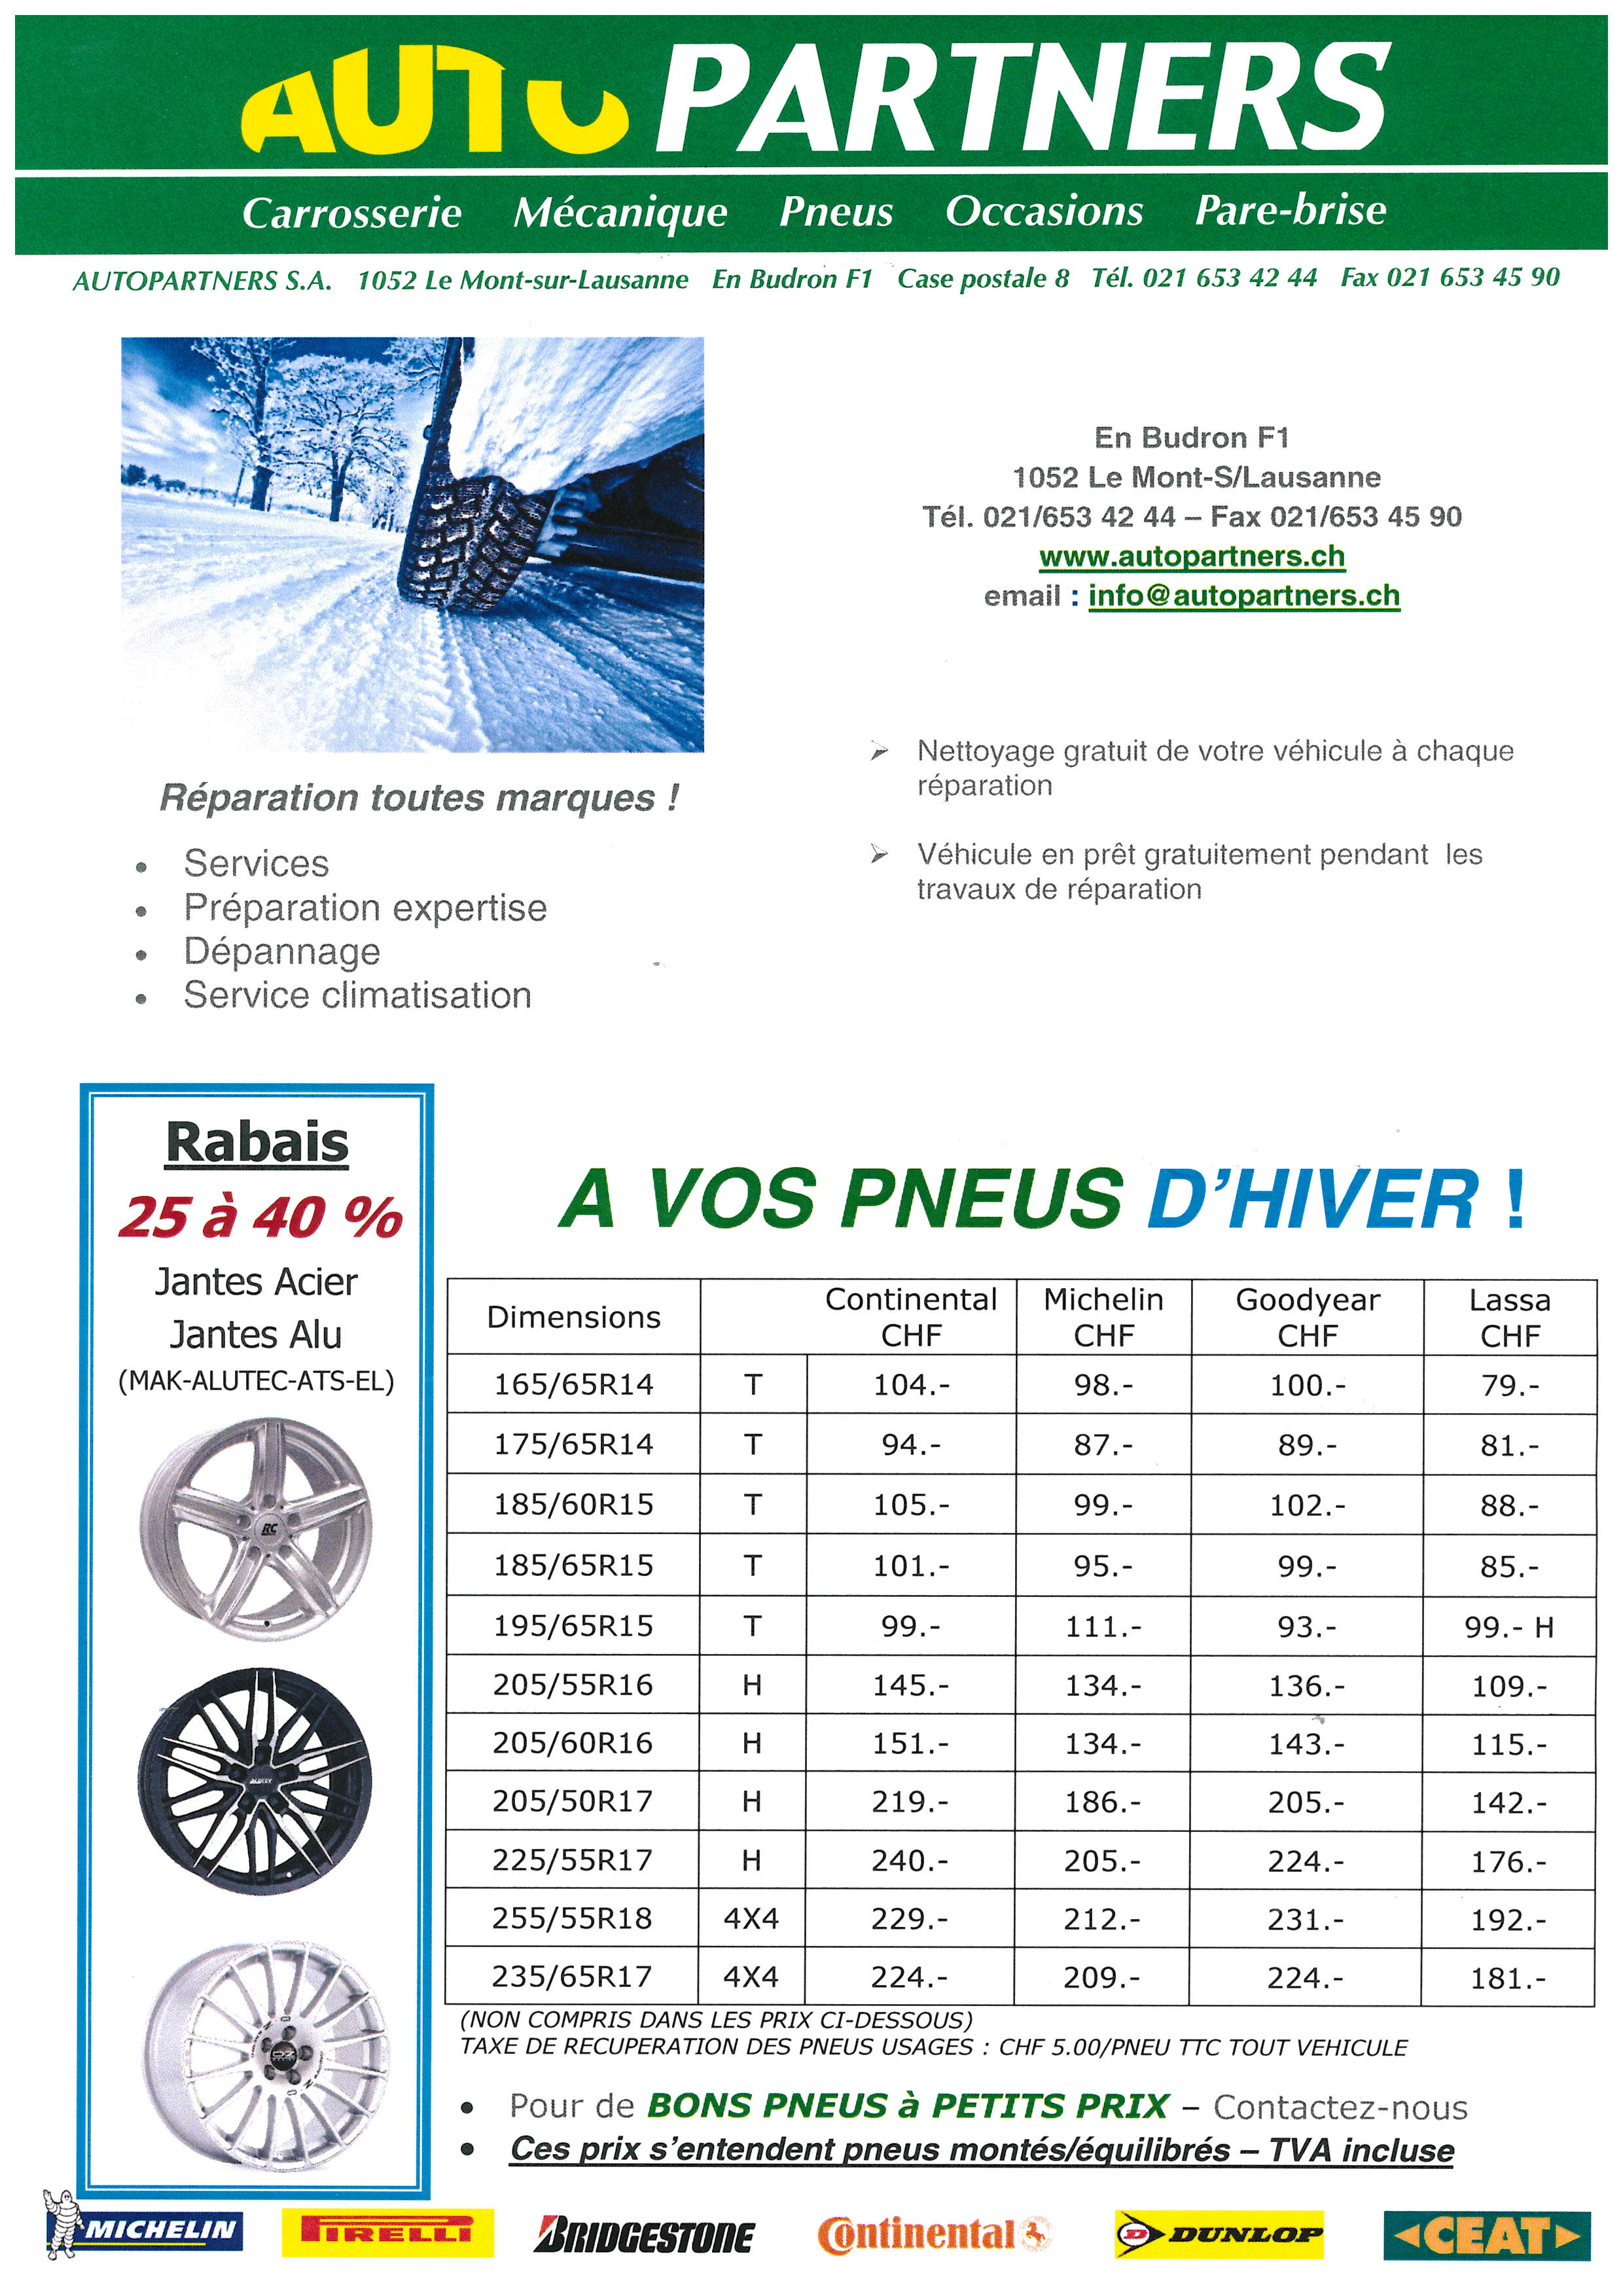 Autopartners SA pneus hiver 2015 Le Mont-sur-Lausanne